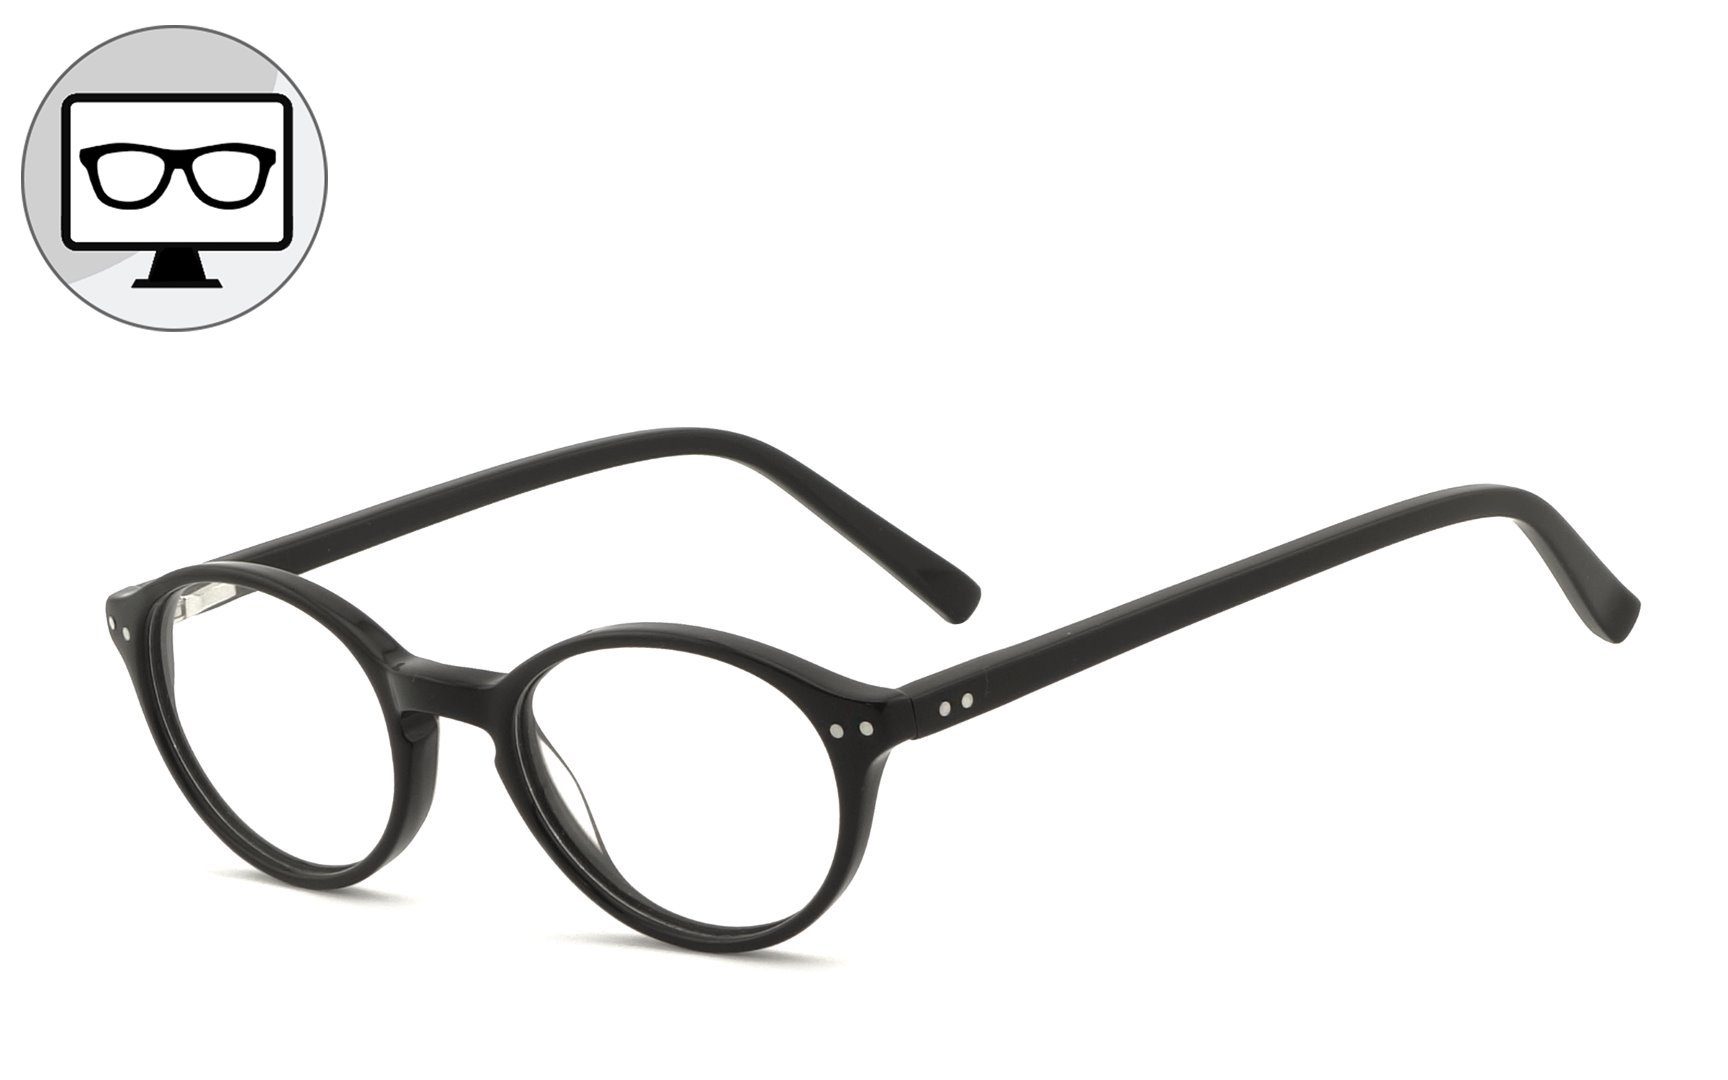 COR Brille Blaulichtfilter Brille, Blaulicht Brille, Bildschirmbrille,  Bürobrille, Gamingbrille, ohne Sehstärke, COR045b (Xenolit® digital)